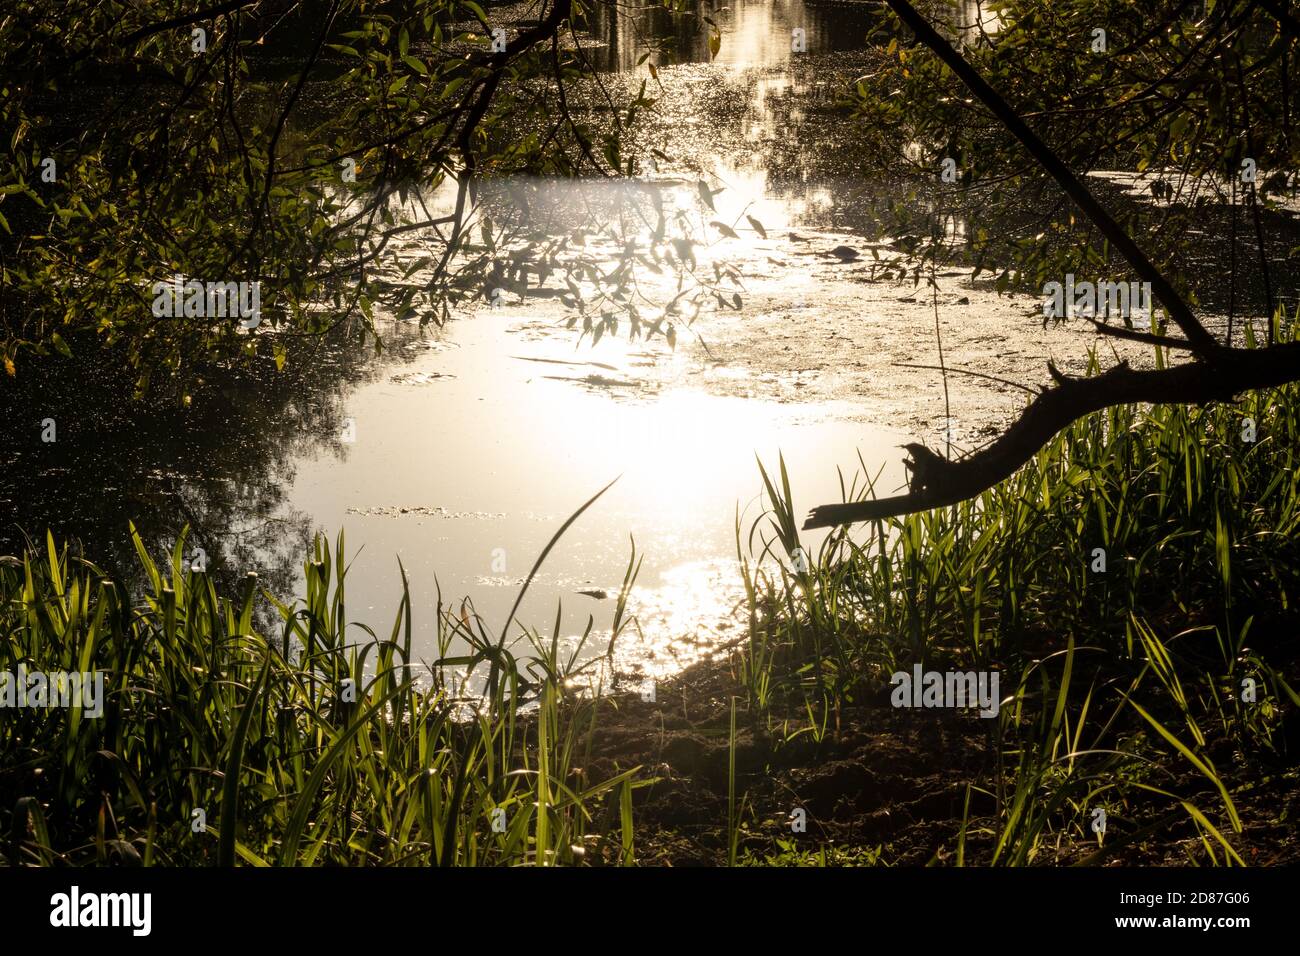 Sonnenuntergangslicht strahlt auf Wasseroberfläche Nahaufnahme auf Flussufer mit Gras und Bäumen Rahmen. Moody landschaftlich sonnig ruhig Herbst natürlichen Hintergrund Stockfoto